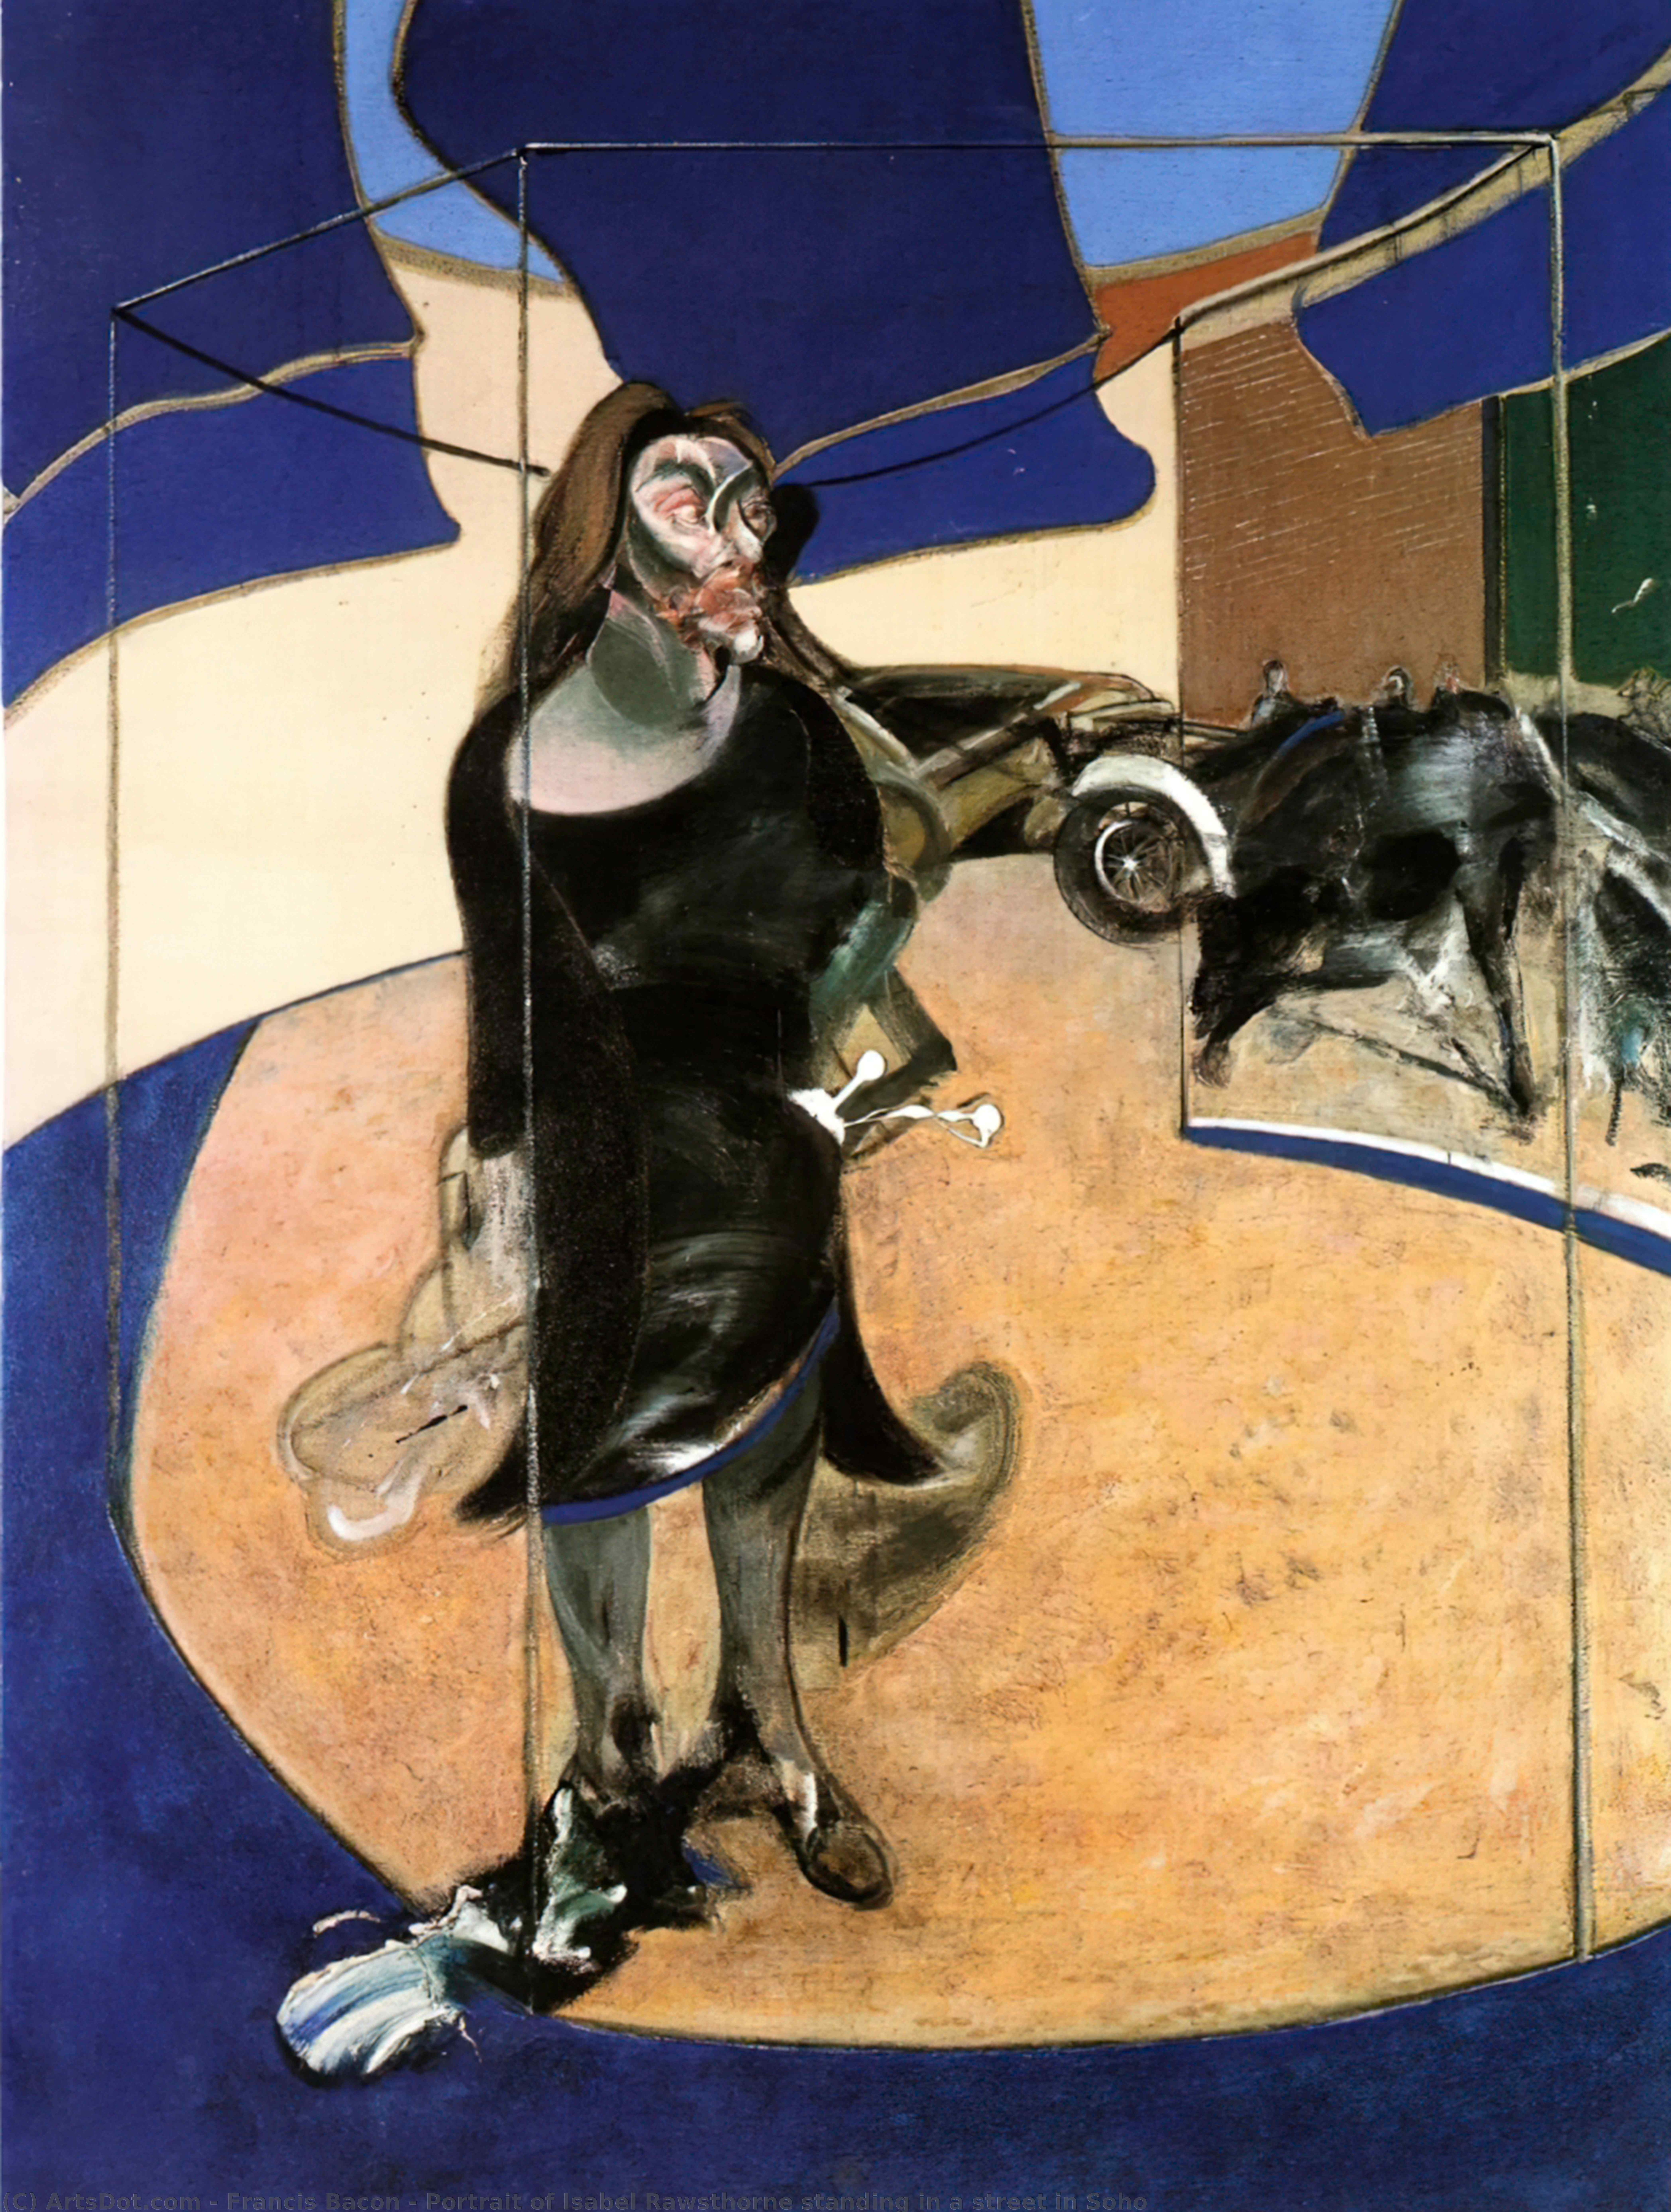 Wikioo.org - Bách khoa toàn thư về mỹ thuật - Vẽ tranh, Tác phẩm nghệ thuật Francis Bacon - Portrait of Isabel Rawsthorne standing in a street in Soho